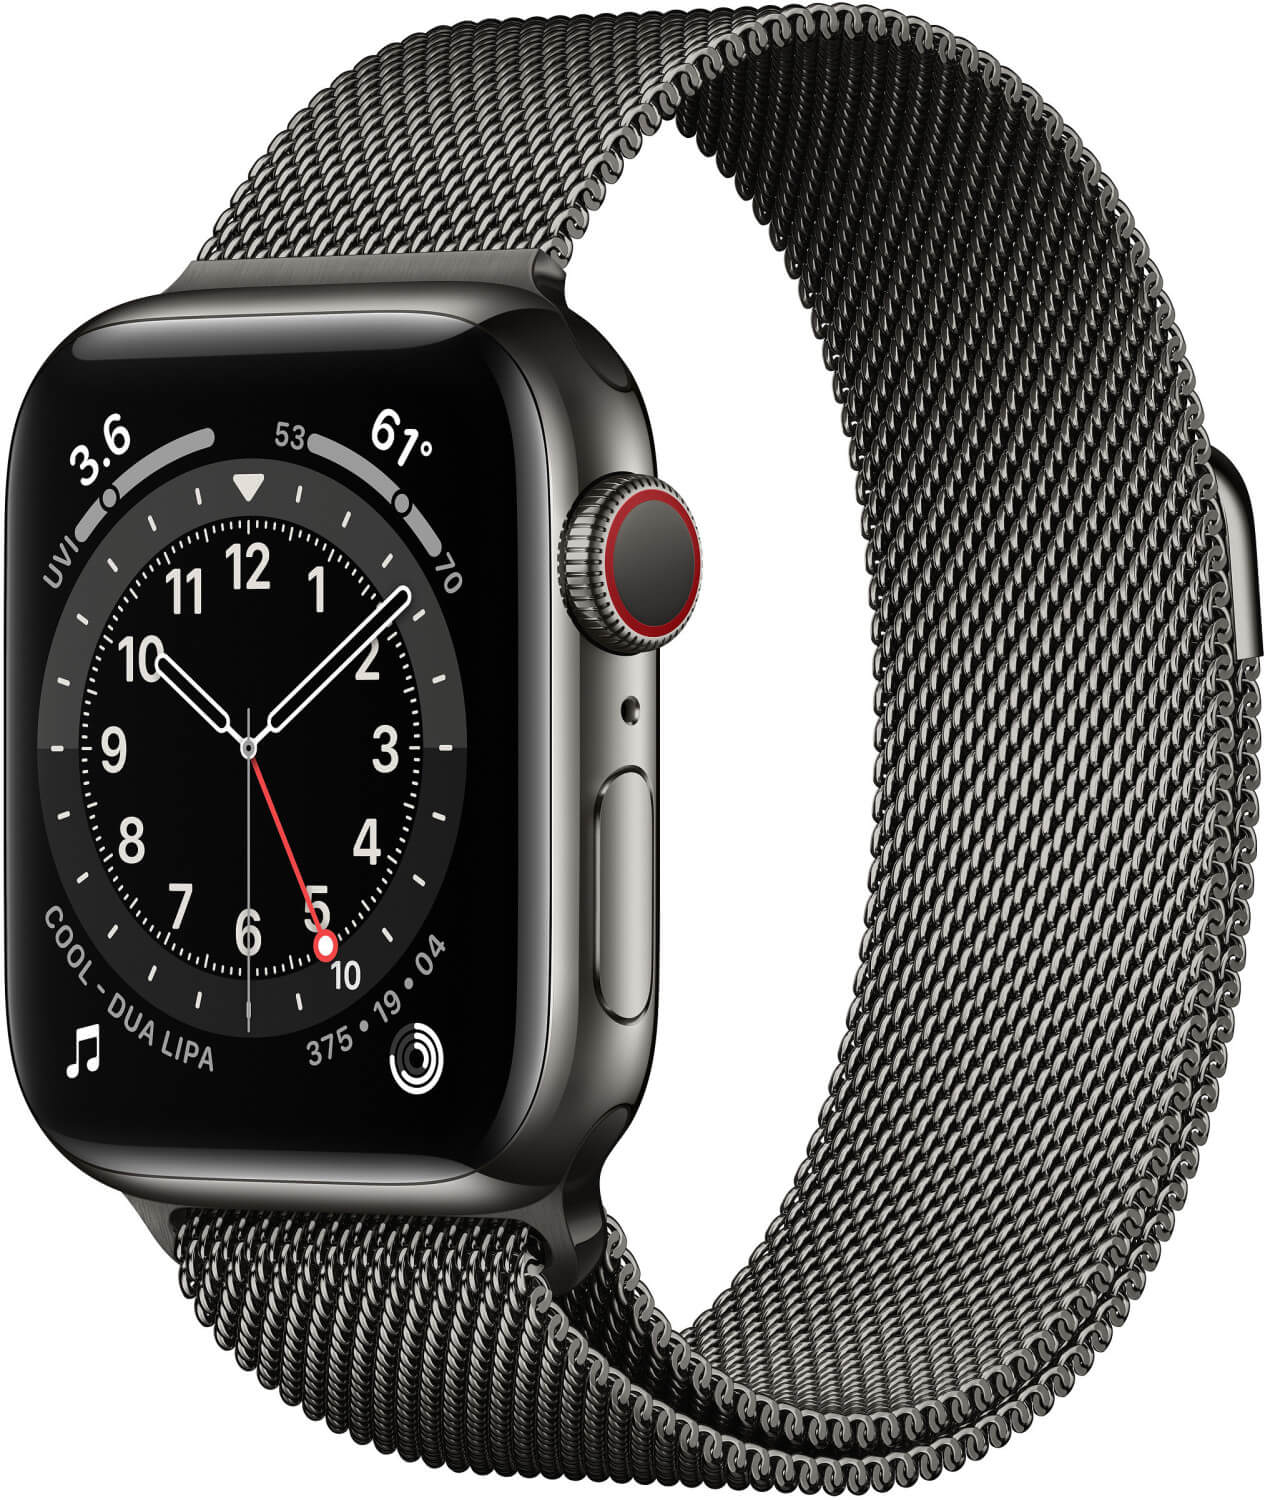 Apple Watch Angebote Jetzt Gunstig Kaufen Mydealz